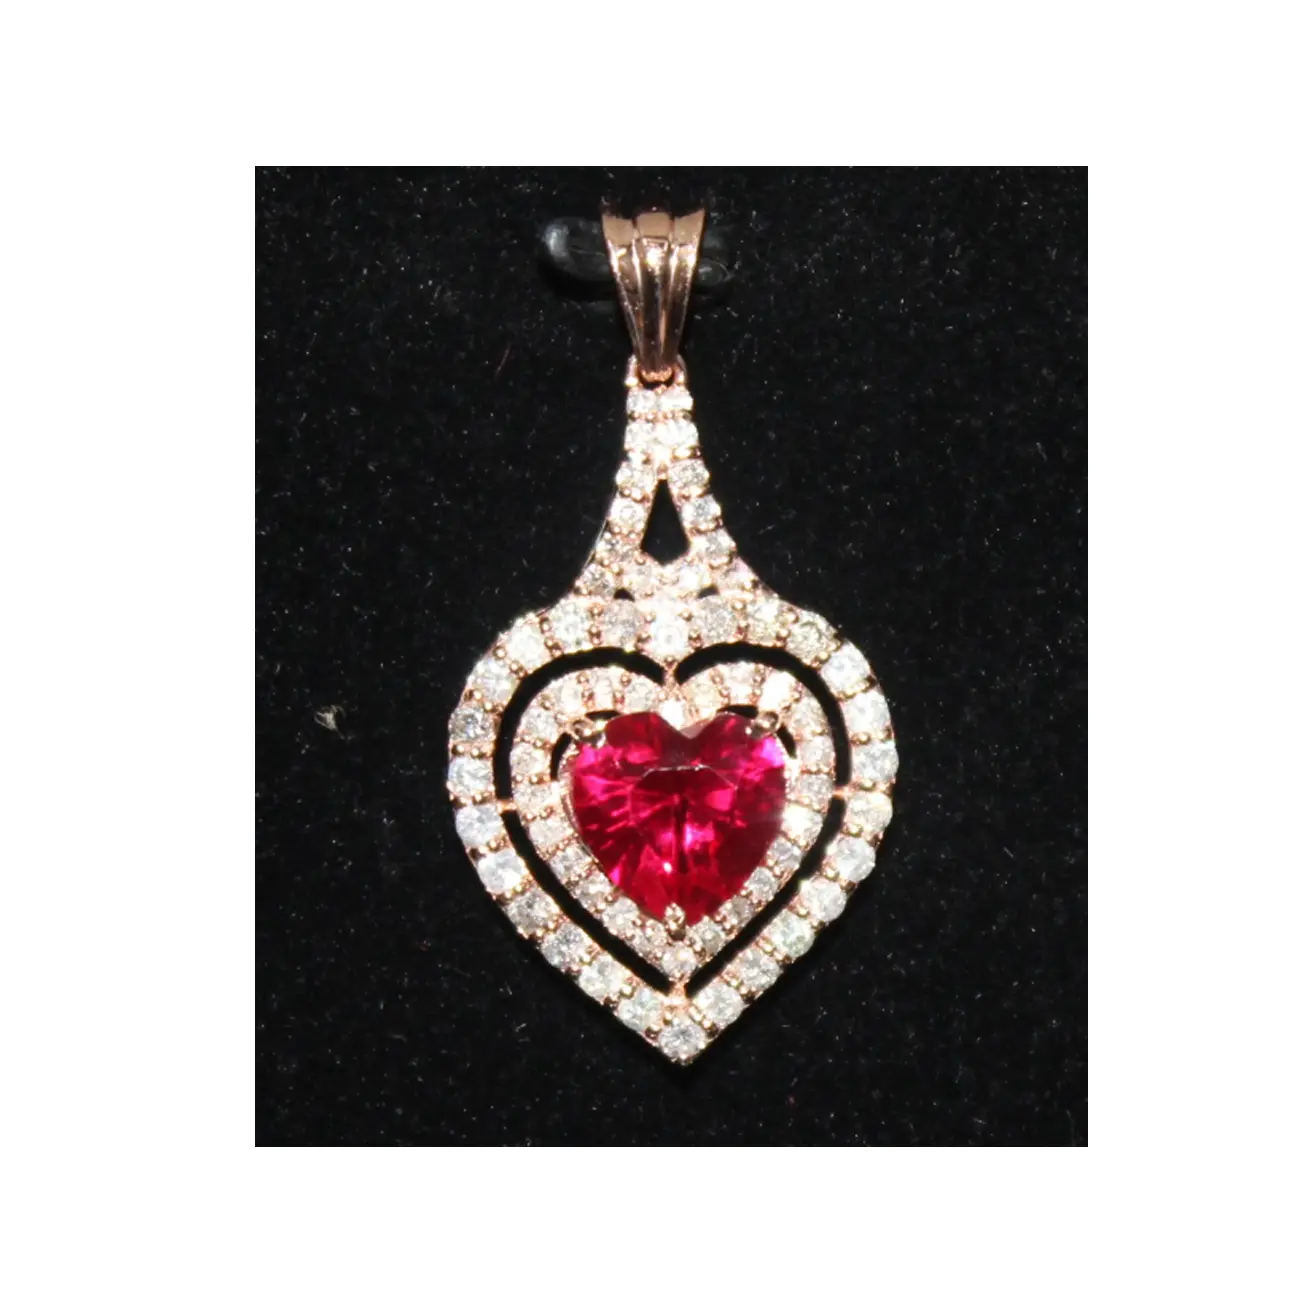 Pingente de diamantes naturais com peso de diamantes de 1.9ct, joia de boa qualidade e coleção hip hop de luxo